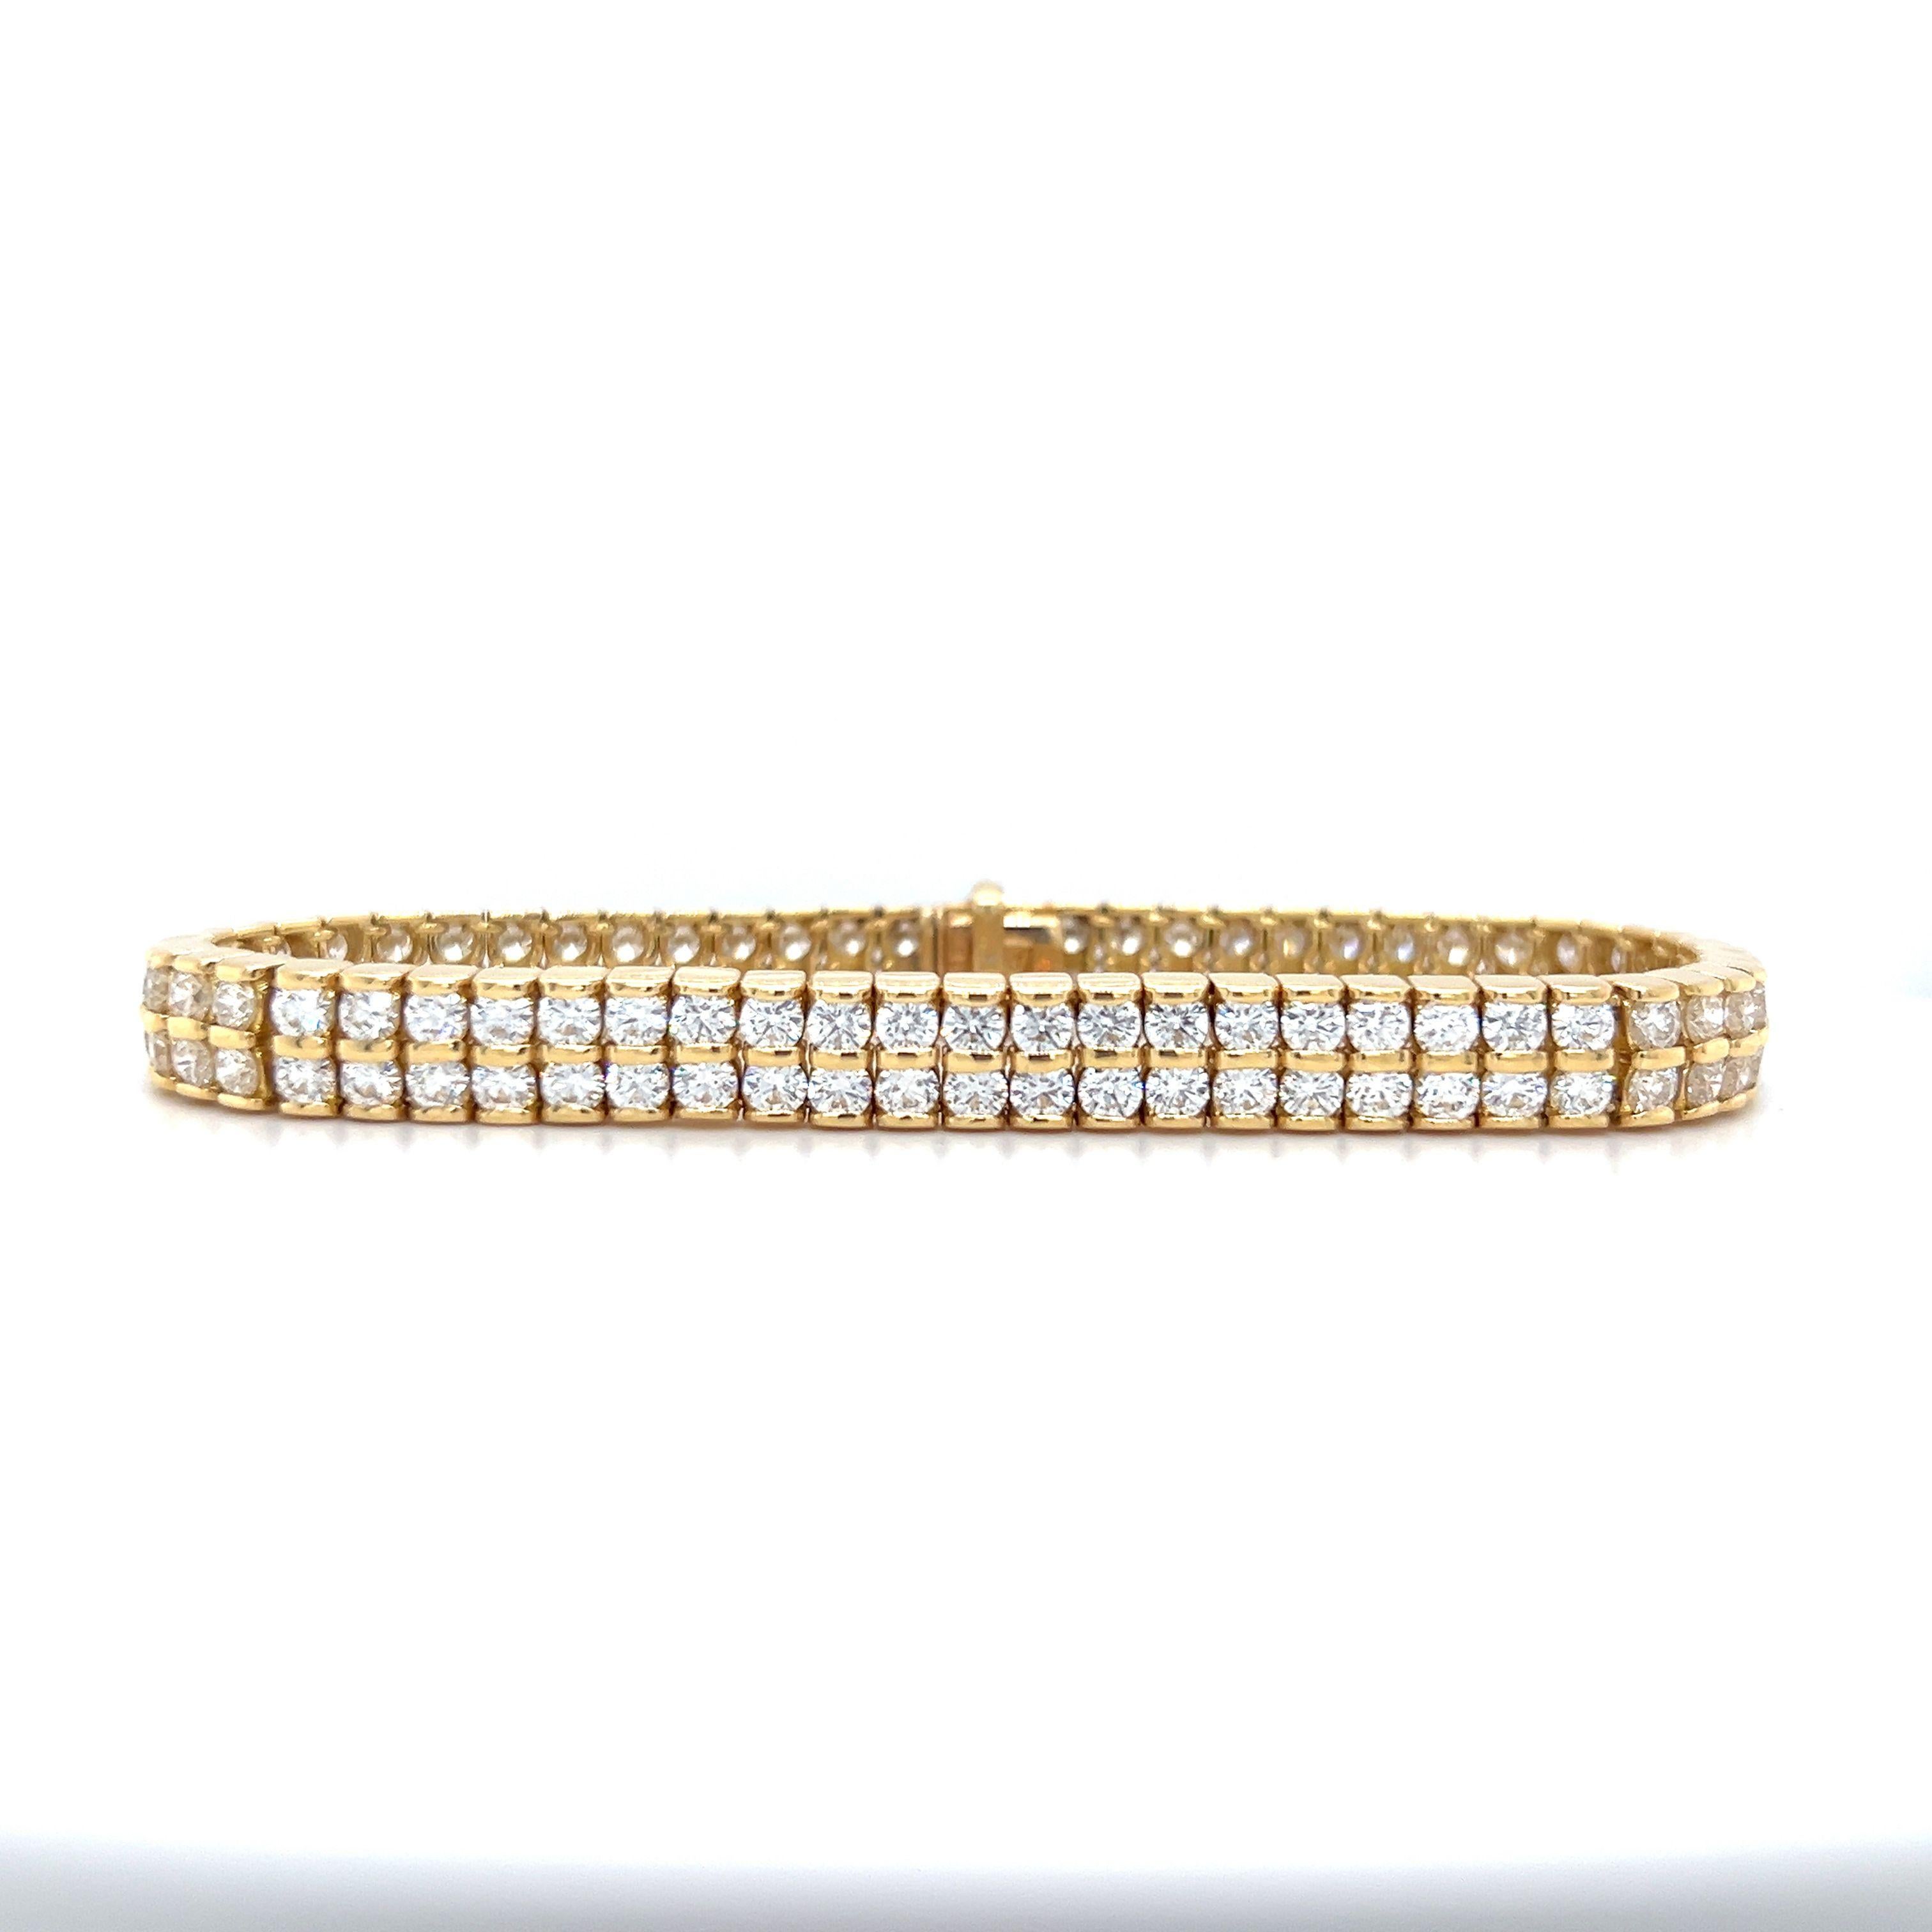 Dieses atemberaubende Armband besteht aus 118 Diamanten, die in einer Doppelreihe angeordnet sind. Diese hochwertigen Diamanten haben ein Gesamtgewicht von 10,09 Karat, Farbe F-G und Reinheit VS1. Dieses aus 18 Karat Gelbgold gefertigte Armband wird